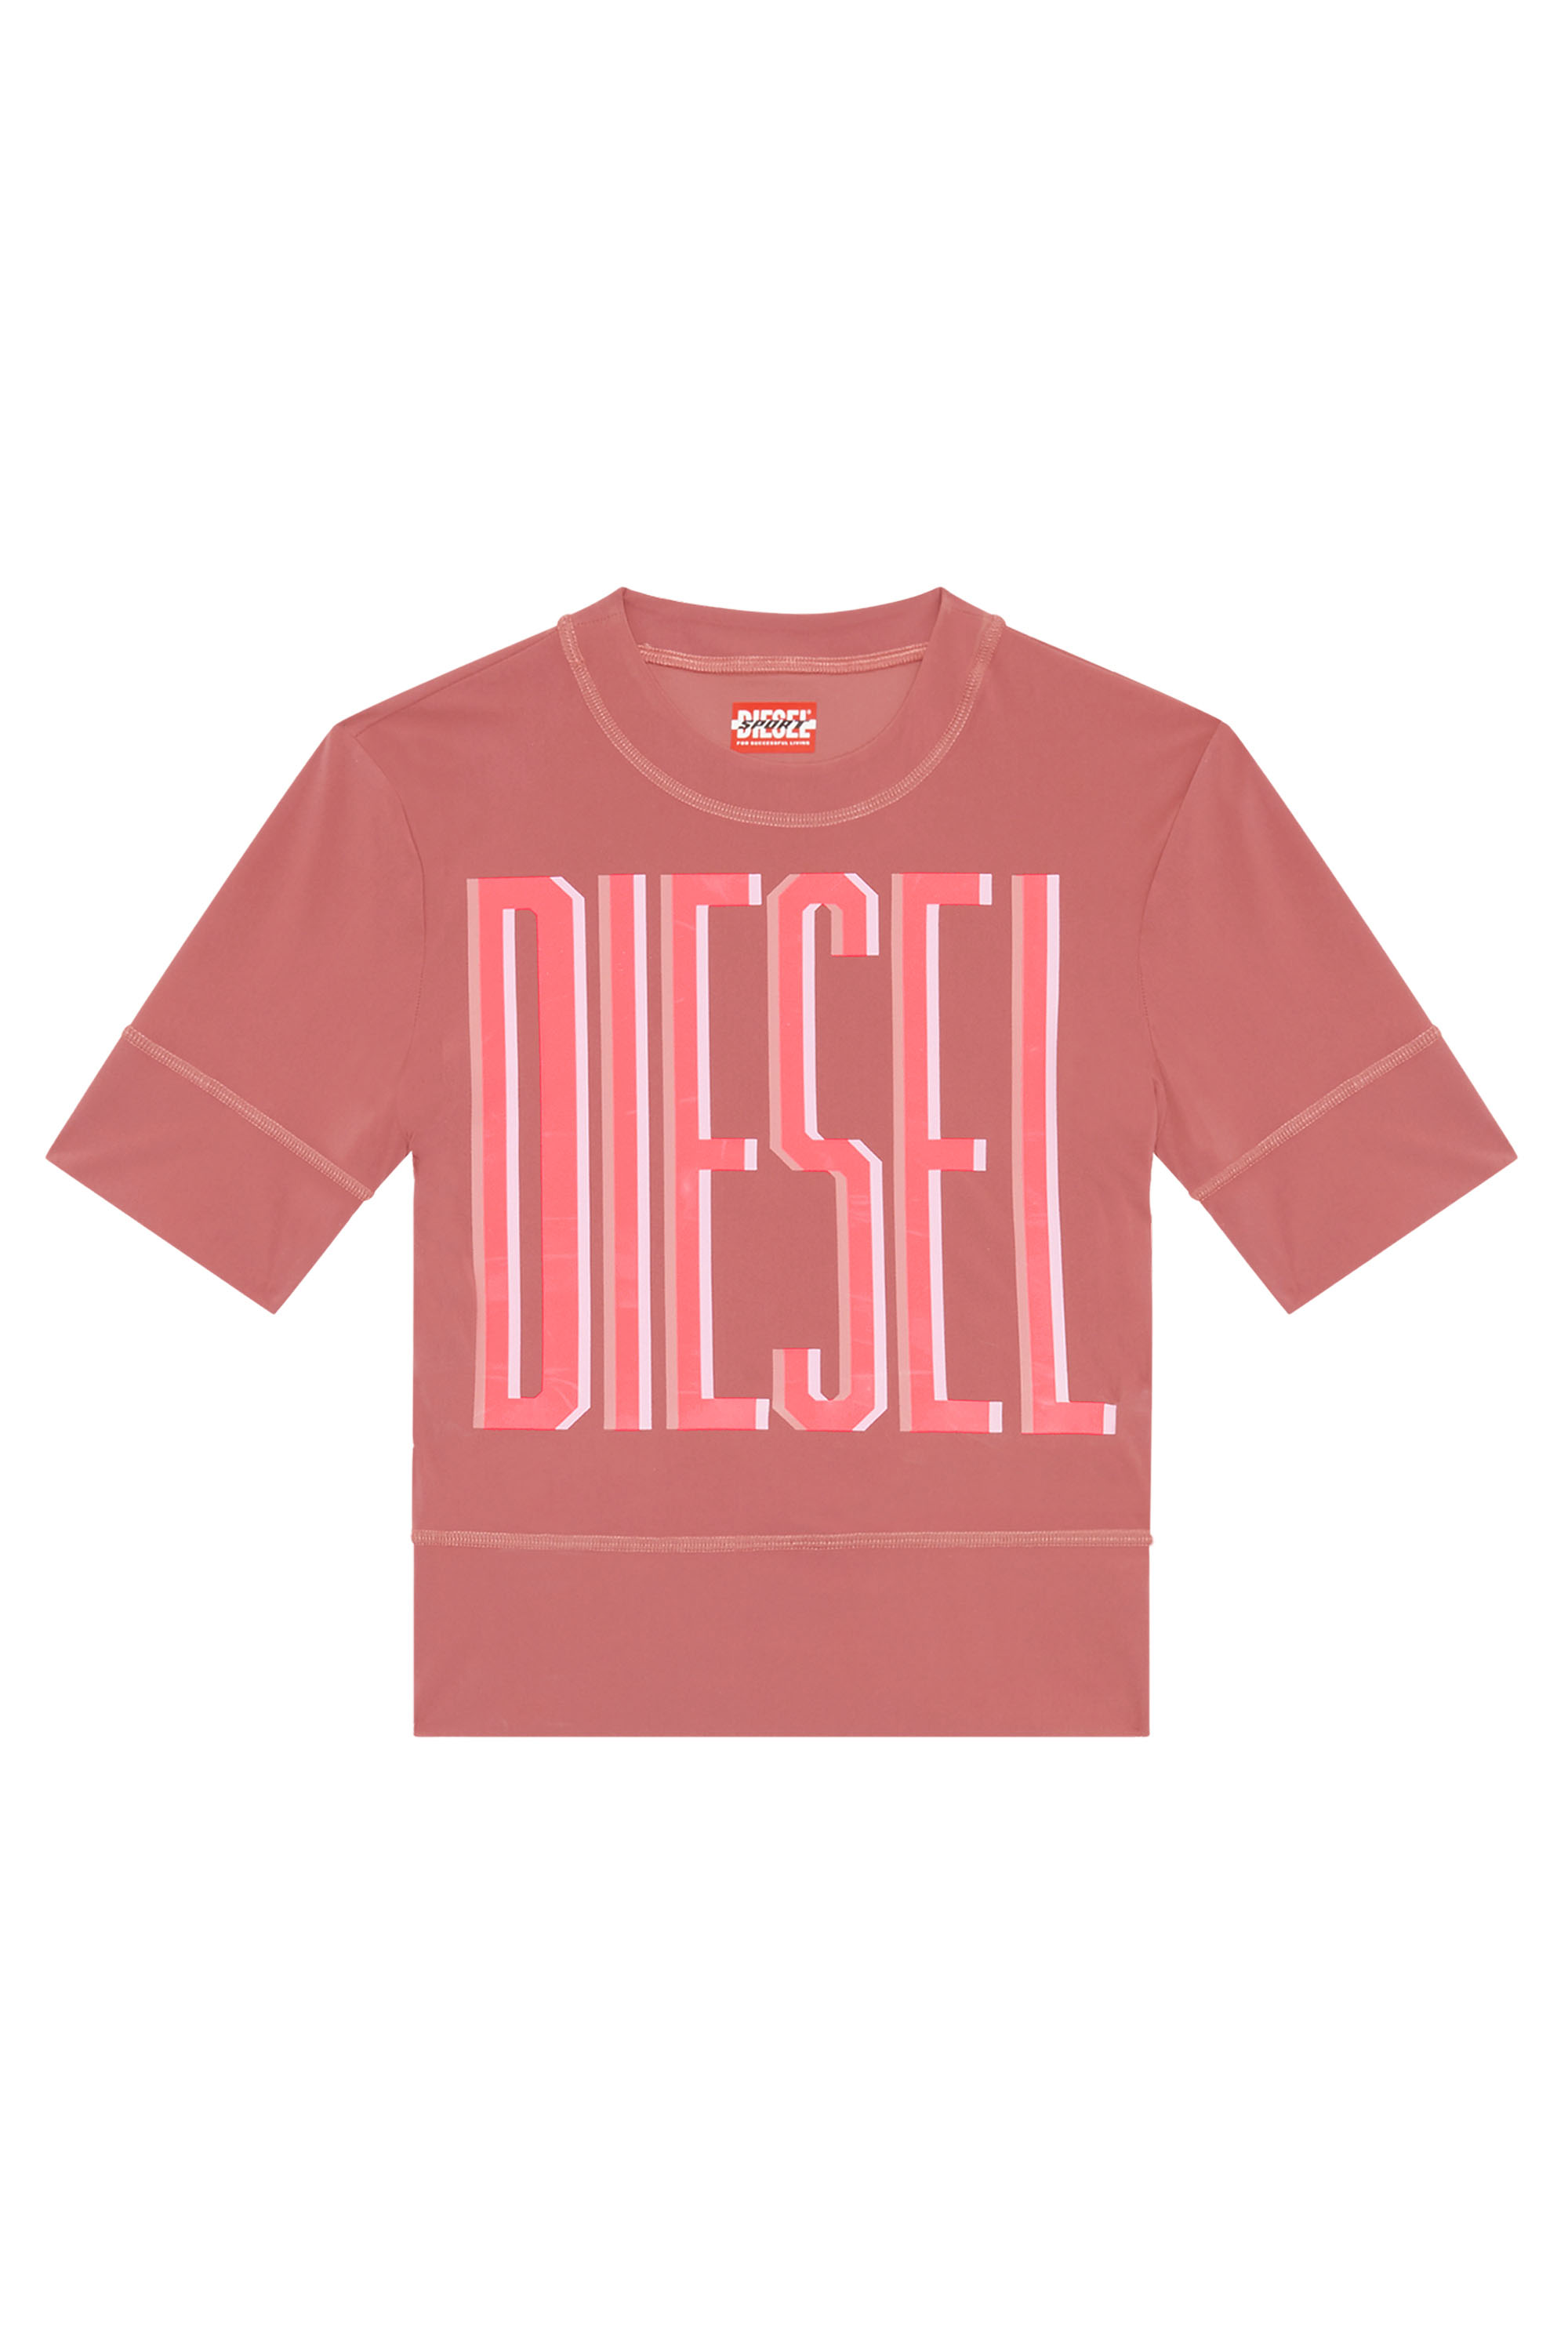 Diesel - AWTEE-JULES-WT06, Rouge - Image 1